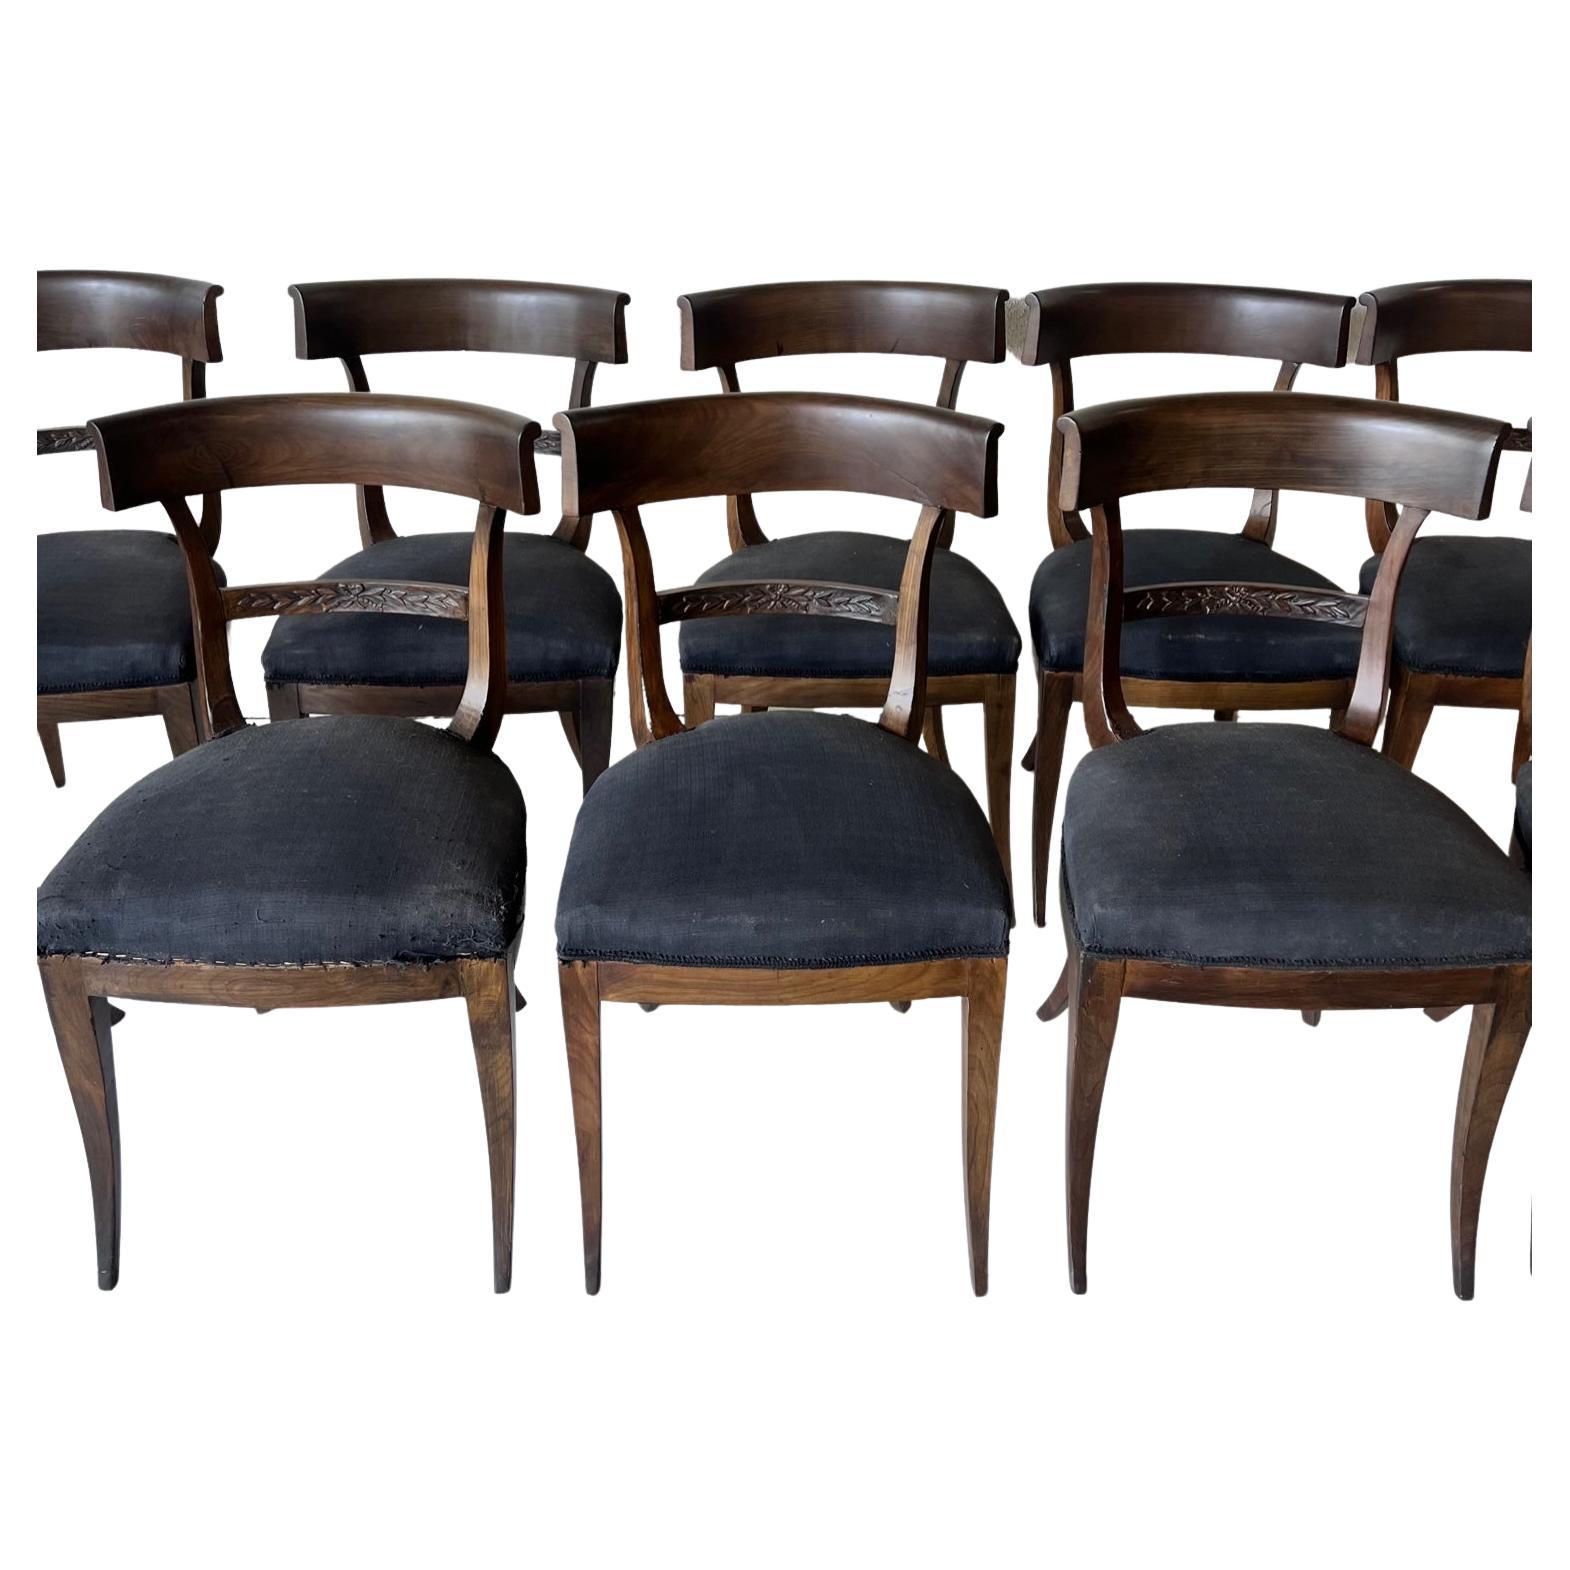 18. Jahrhundert Italienische Klismos Stühle Satz von 10. Konkave Rückenlehne mit gebogenen Beinen (Klismos). Der Klismos-Stil ist zeitlos und klassisch und kommt nie aus der Mode. Die Polsterung der Stühle ist stark beschädigt. Gekauft in Lucca